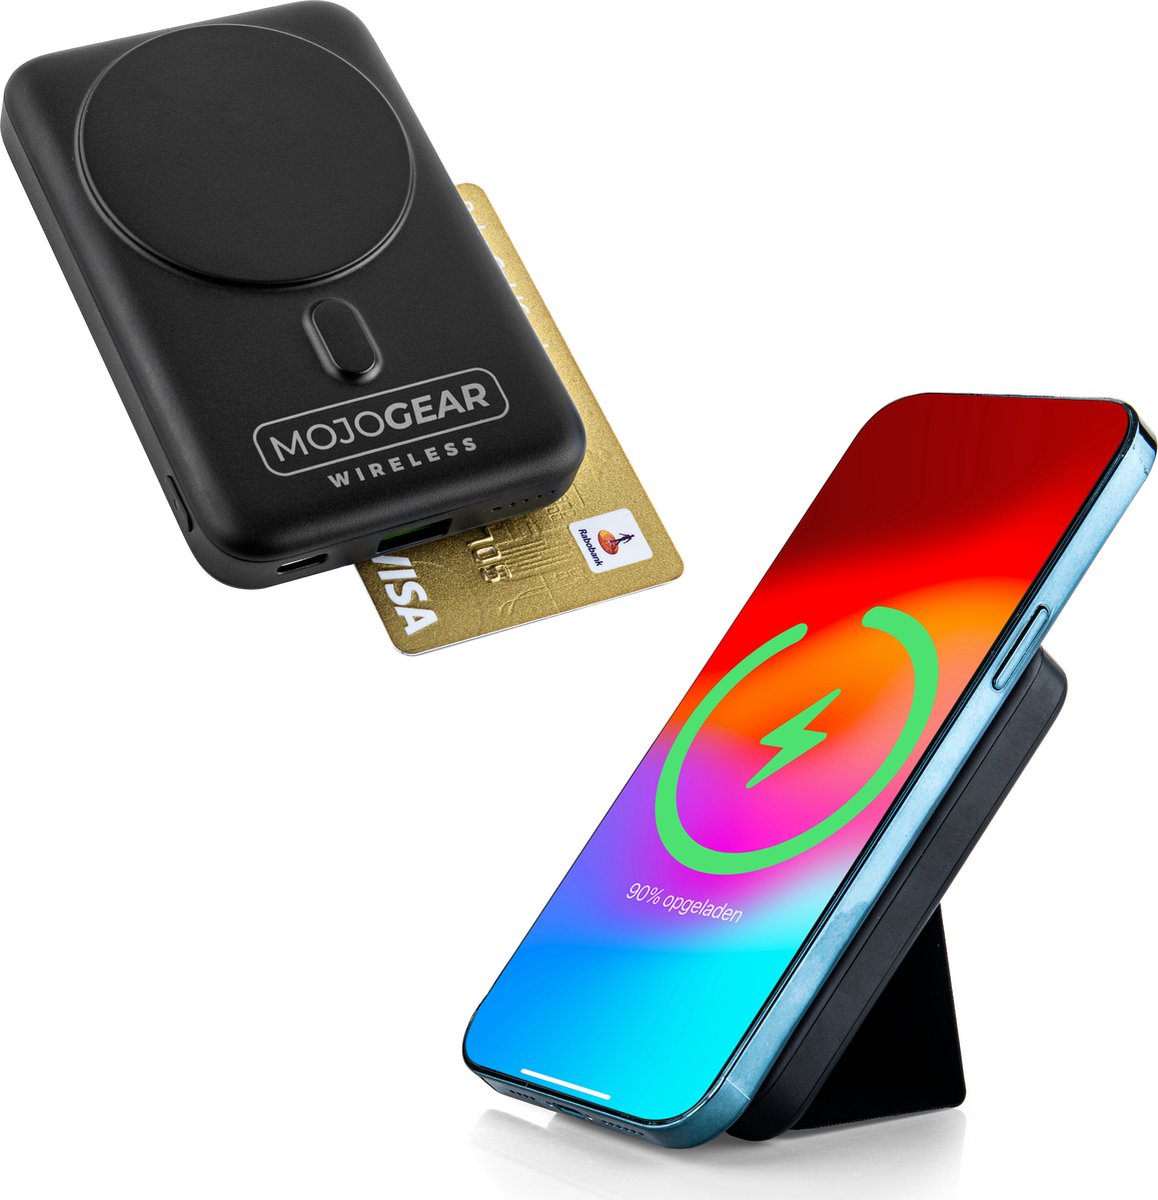 MOJOGEAR Wireless MagSafe powerbank 10.000 mAh - Magnetisch en Draadloos voor Android en iPhone - Met standaard - Compact broekzak-formaat - Zwart